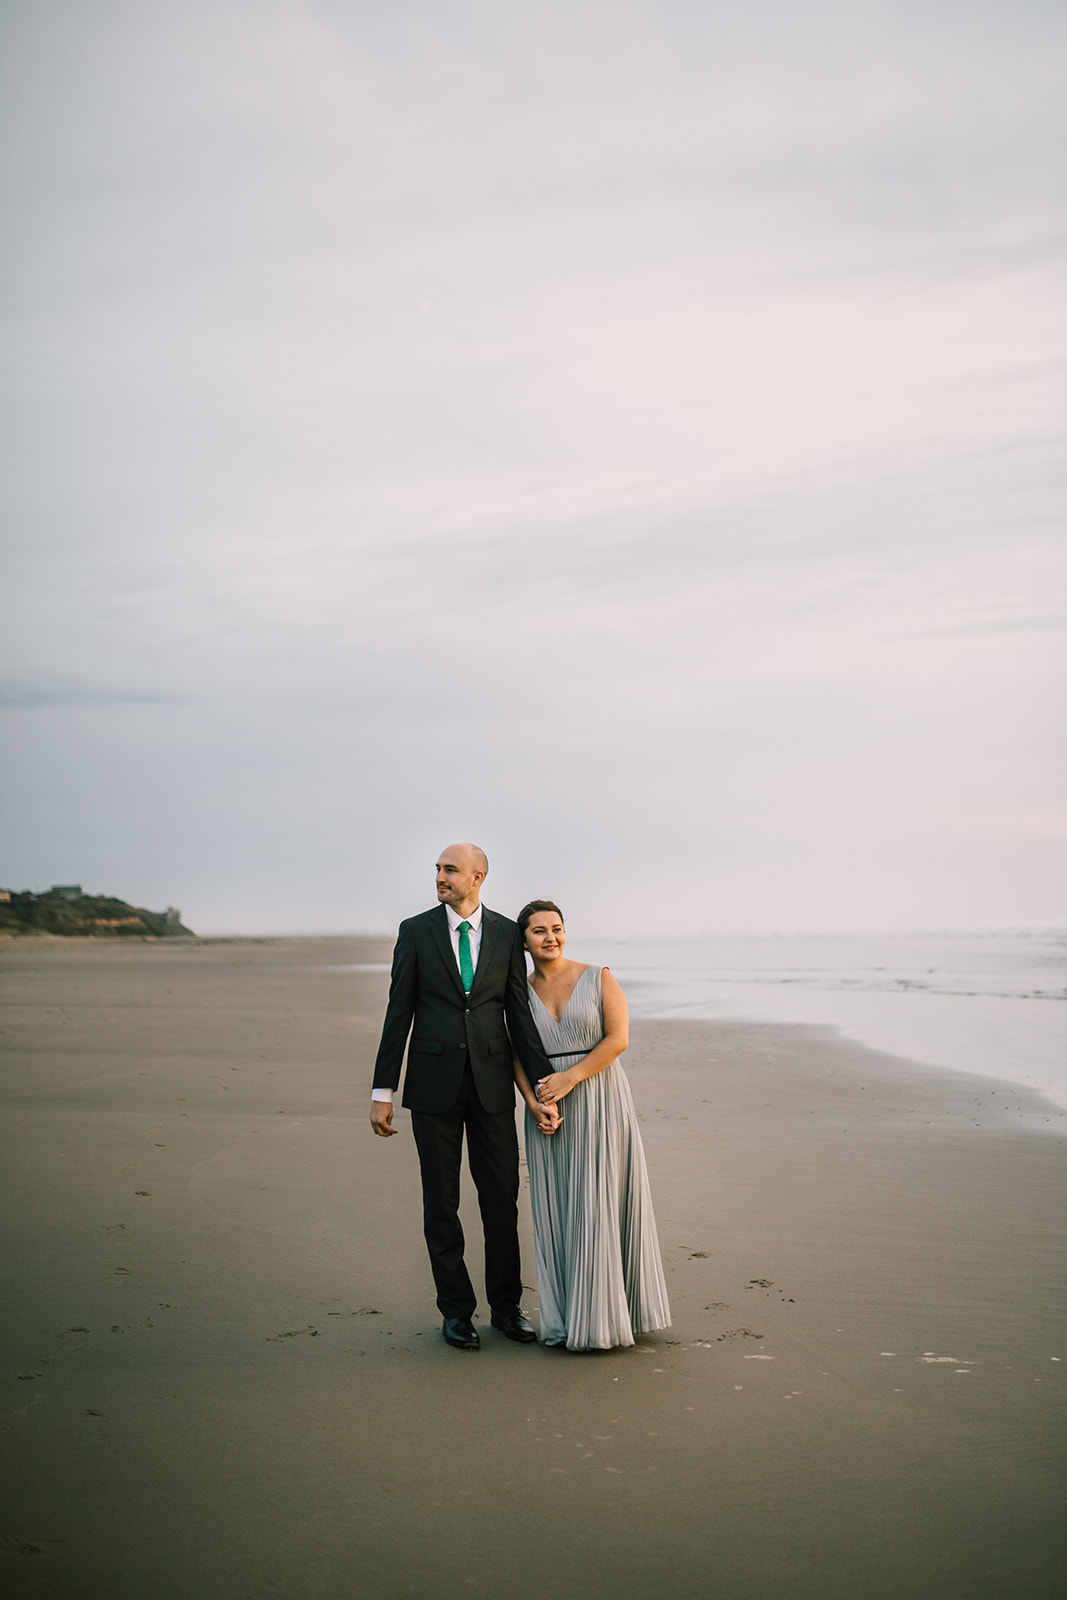 Oregon coast tiny wedding ideas